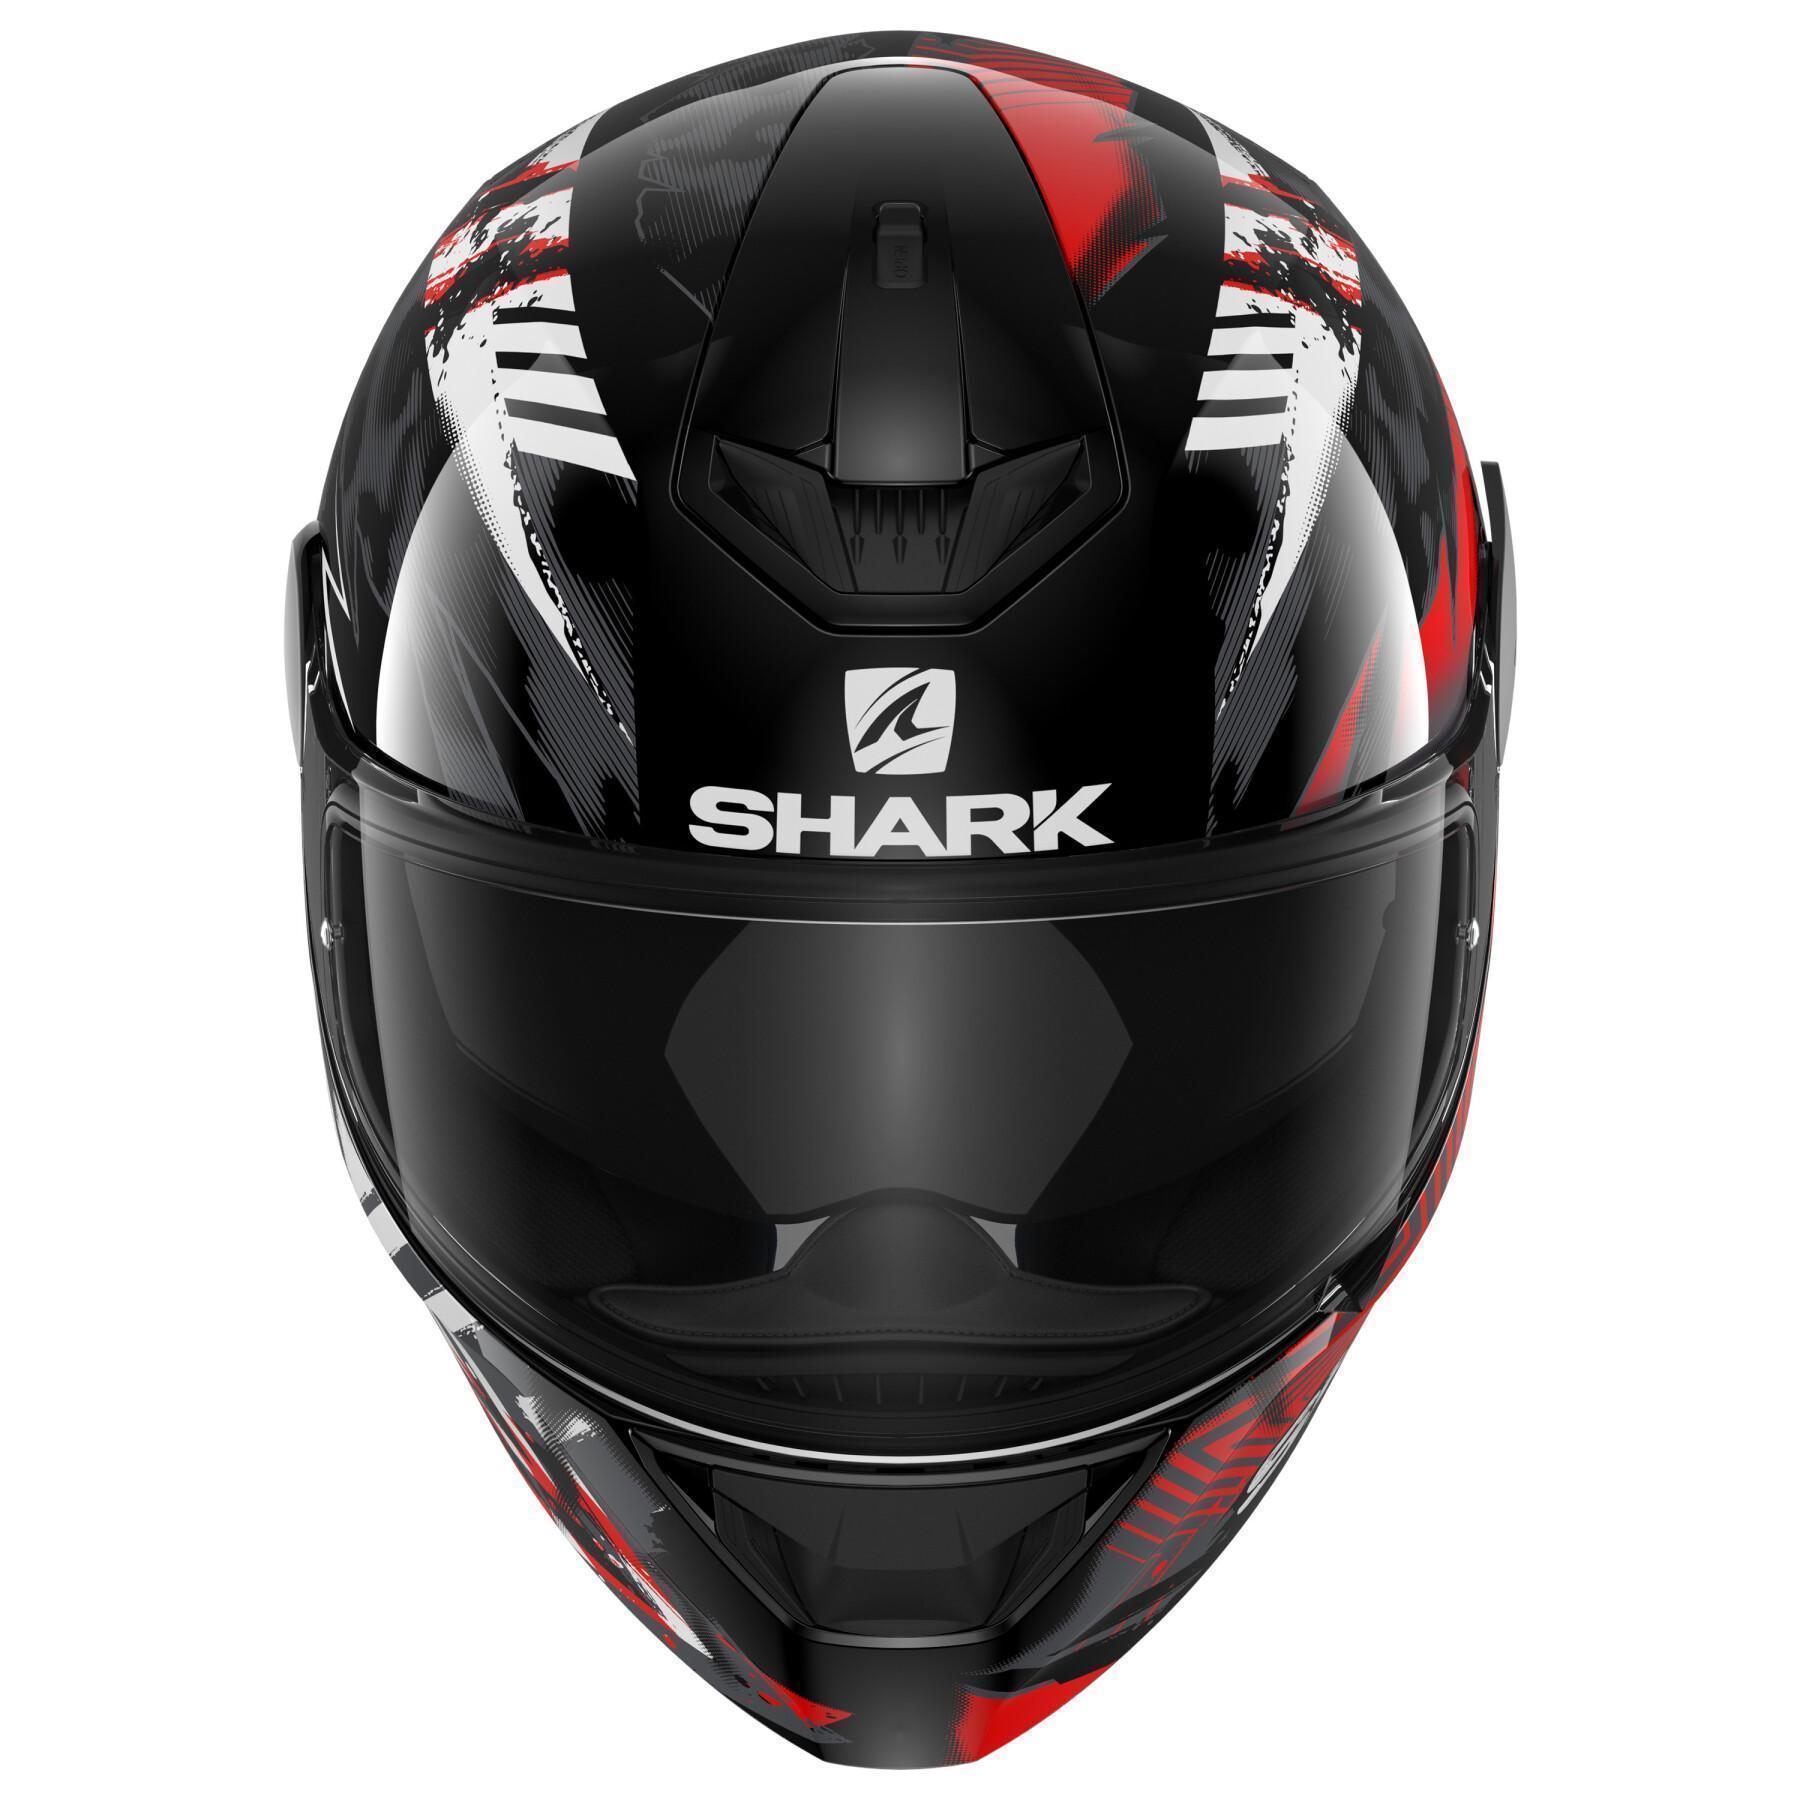 Full face motorcycle helmet Shark d-skwal 2 penxa